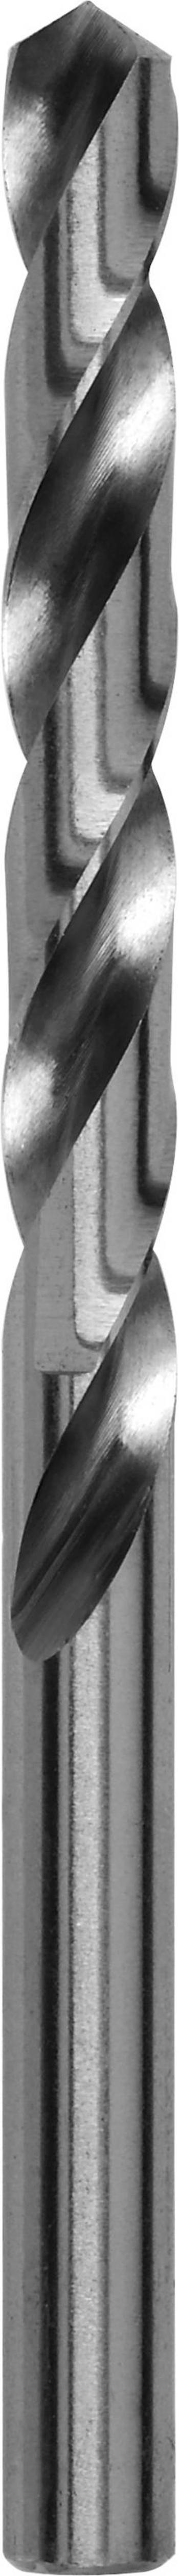 Kovový spirálový vrták Bosch Accessories 2609255037, 2.5 mm, 57 mm, HSS, 2 ks